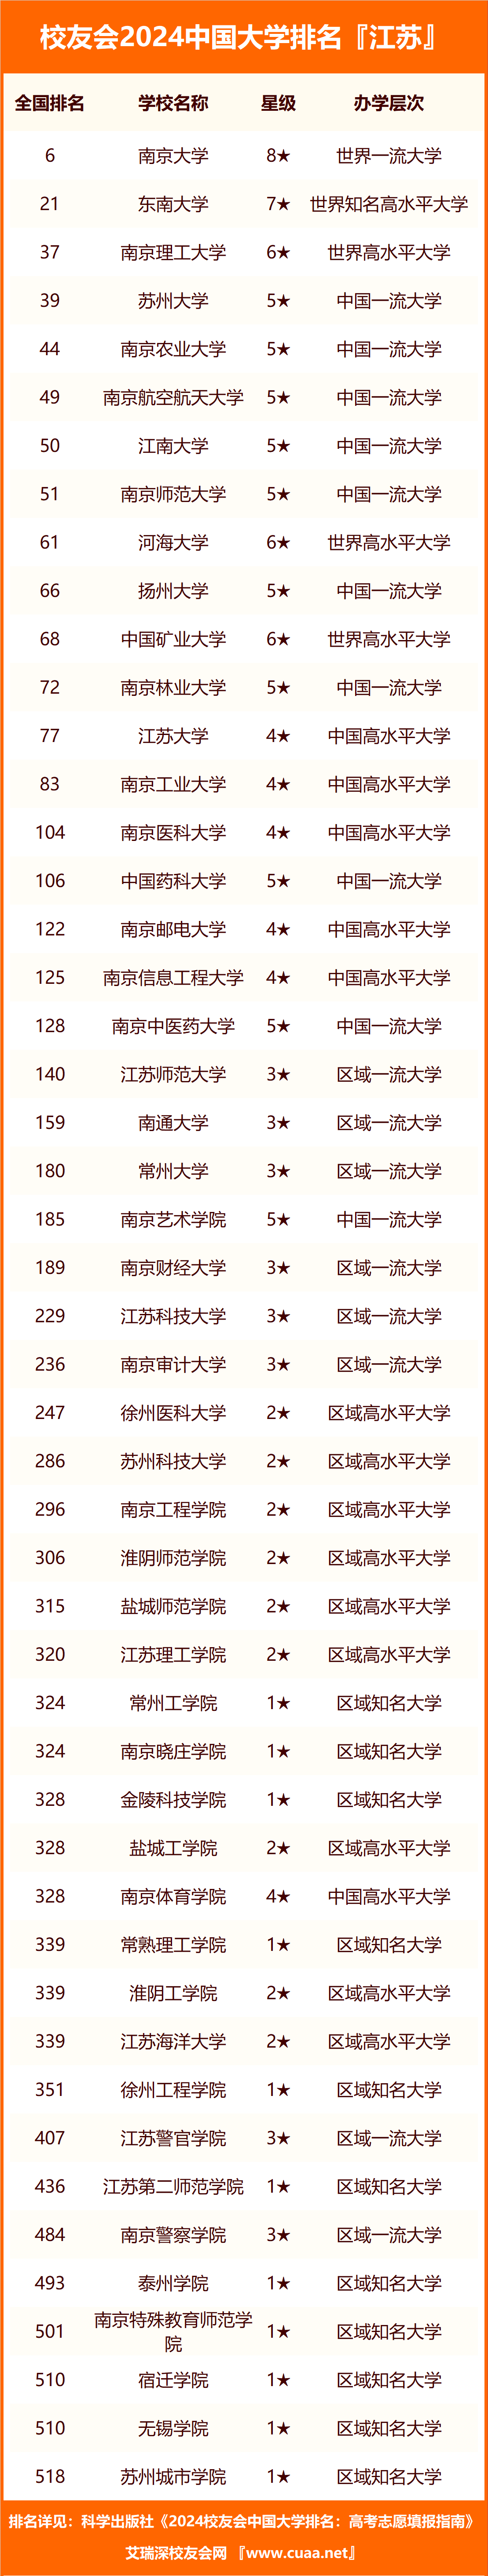 2024年江苏省高职院校排名,江苏农林职业技术学院第一,扬州市职业大学